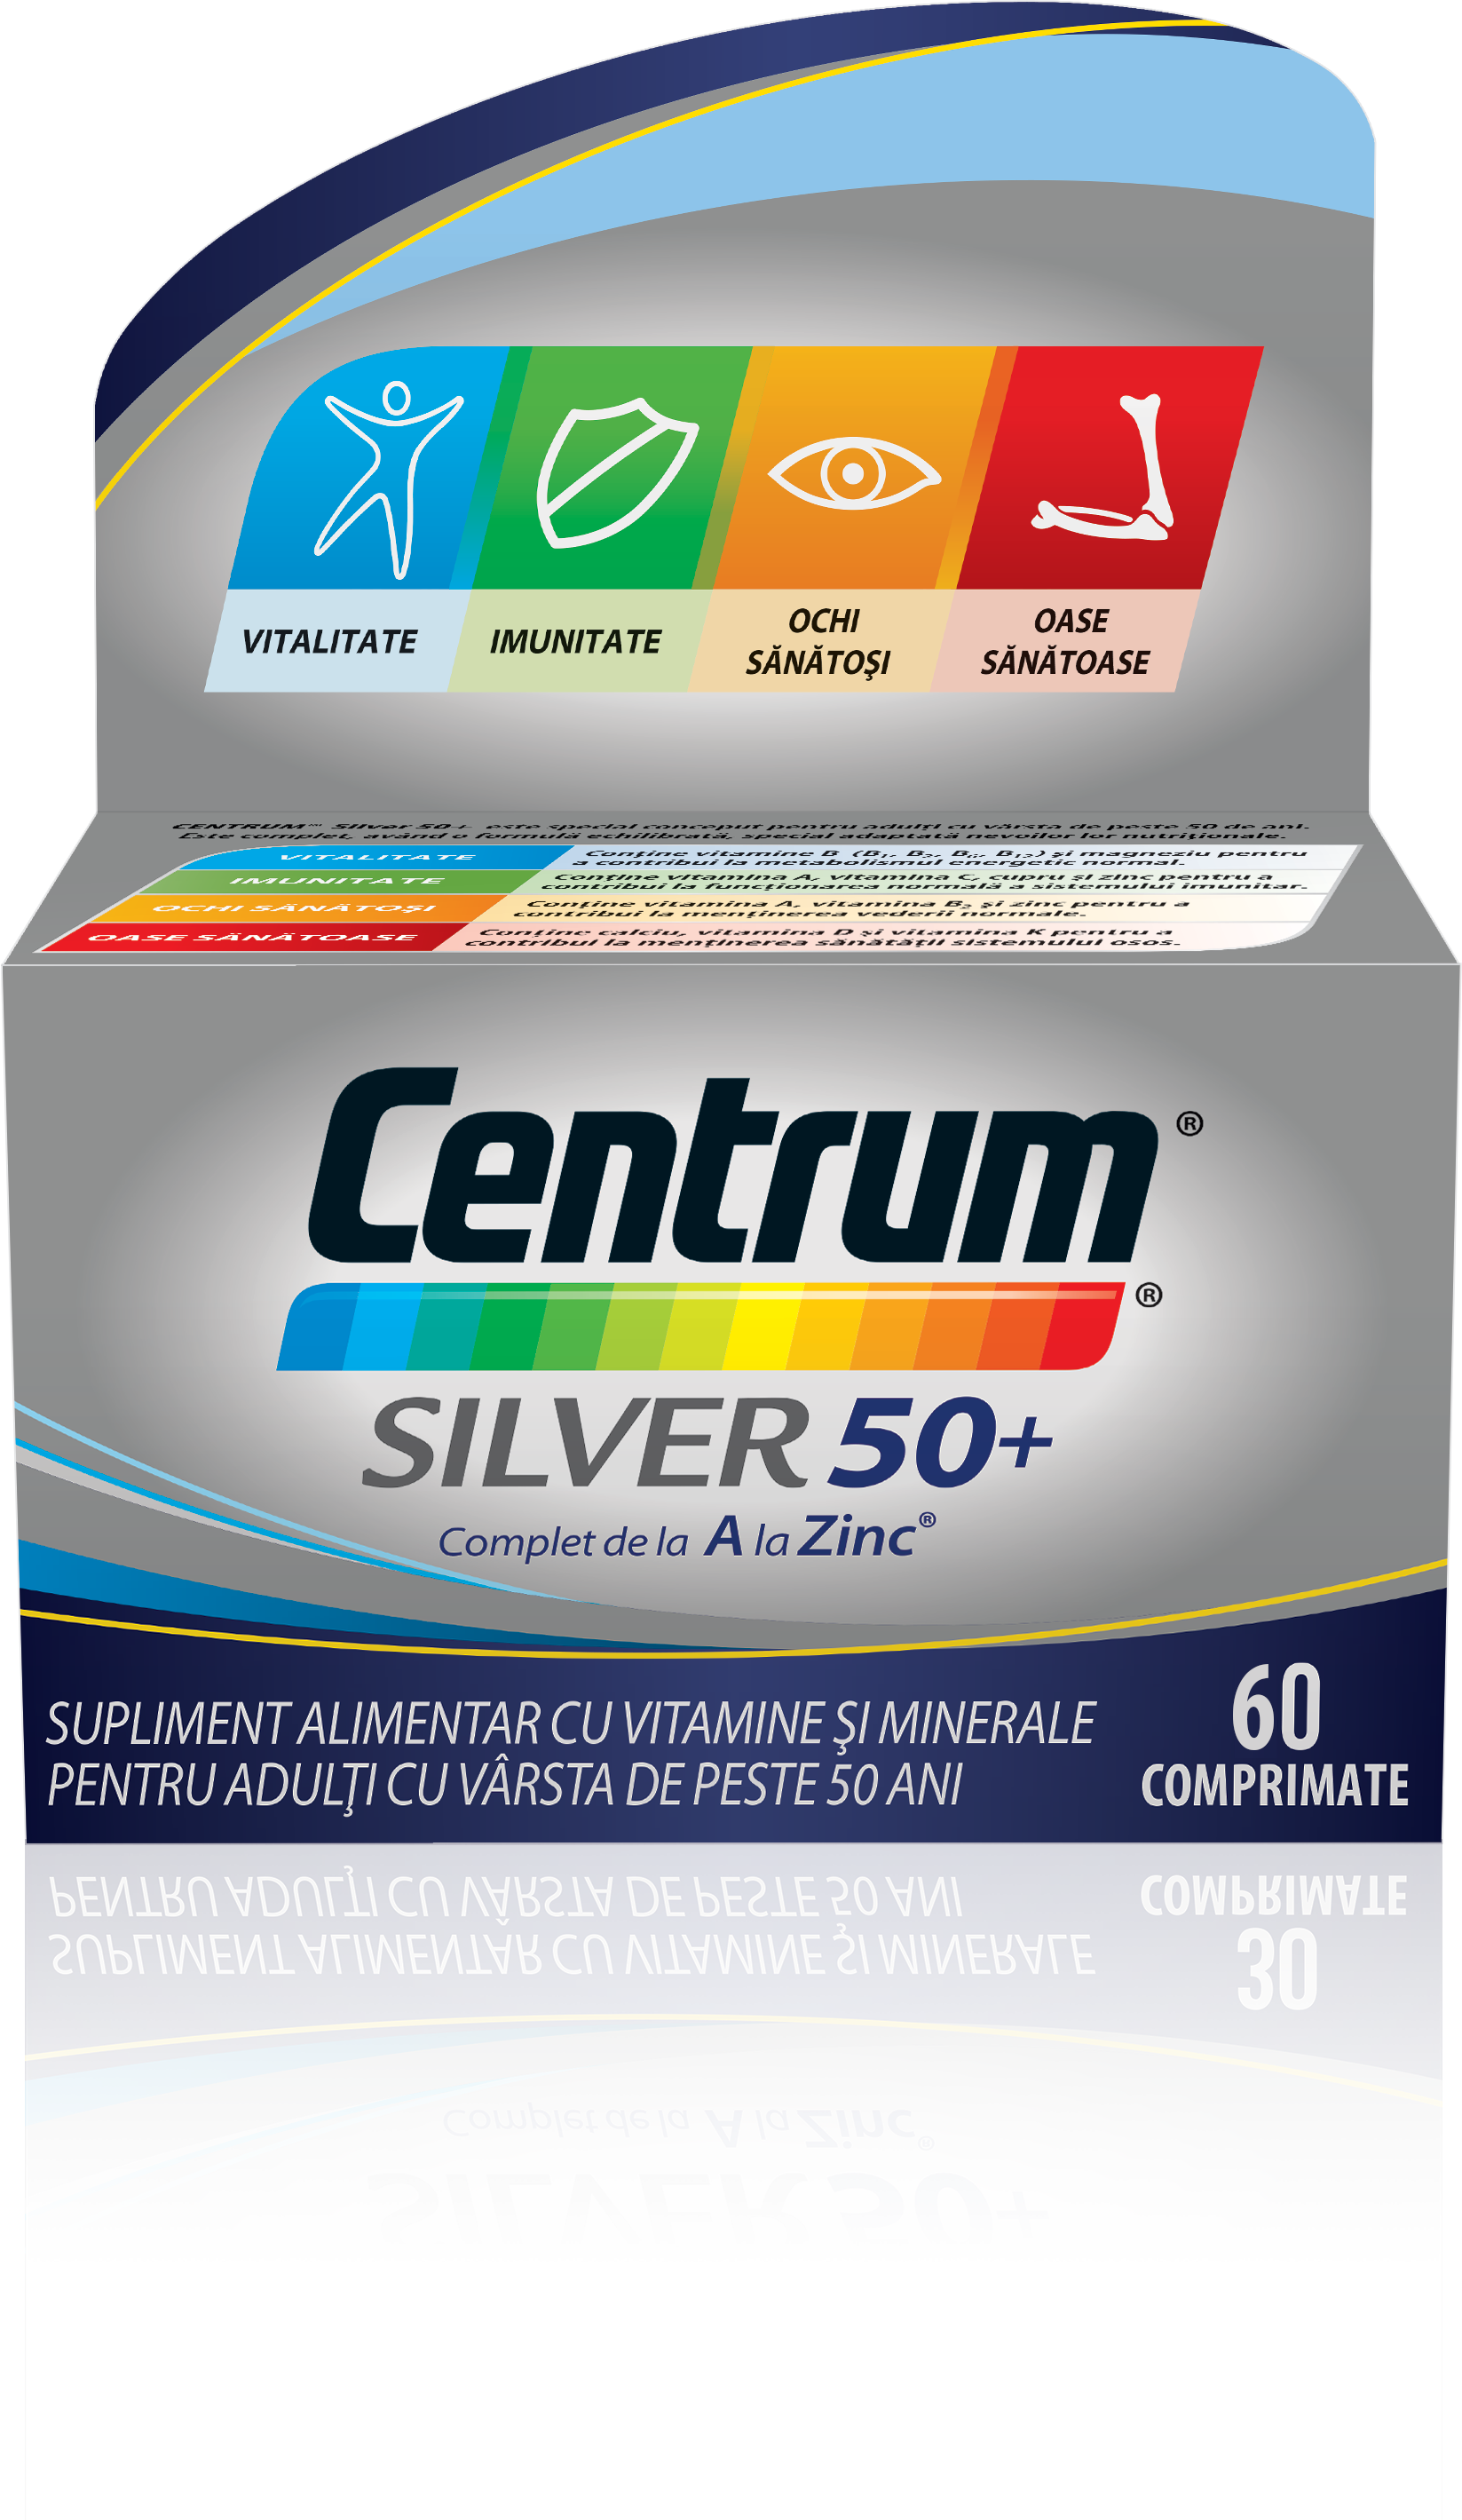 Adulti - Centrum silver 50+ complet de la A la Zinc, 30 comprimate, sinapis.ro